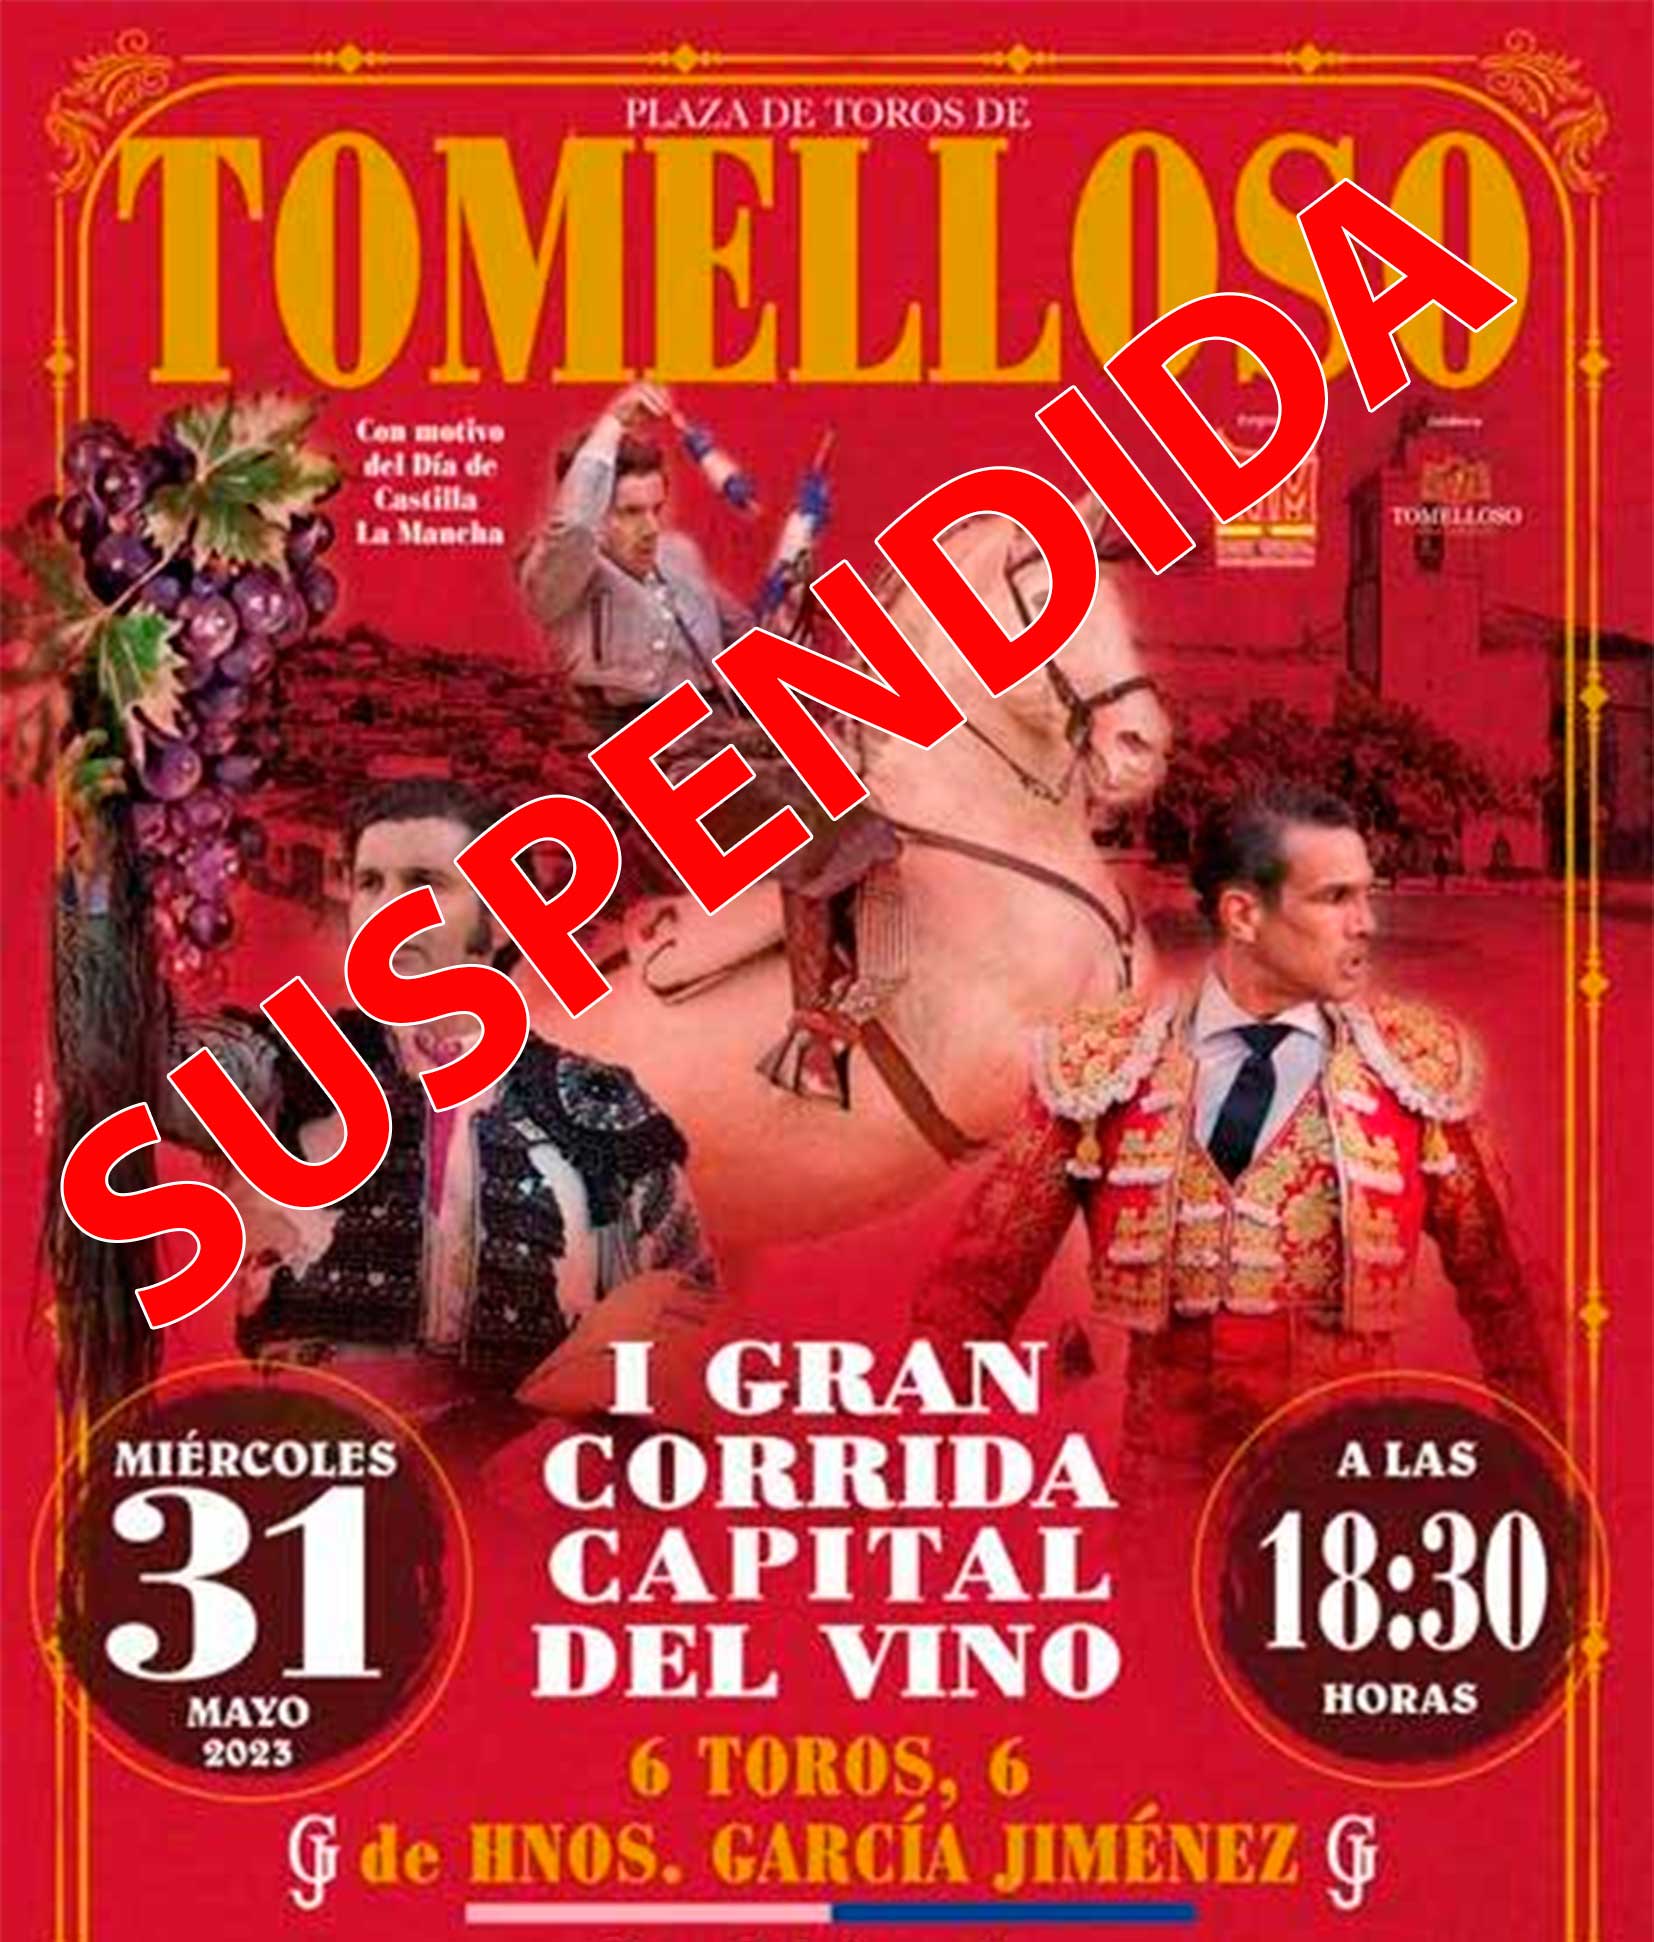 Se suspende la corrida de toros de Ventura, Morante y Manzanares de este miércoles en Tomelloso